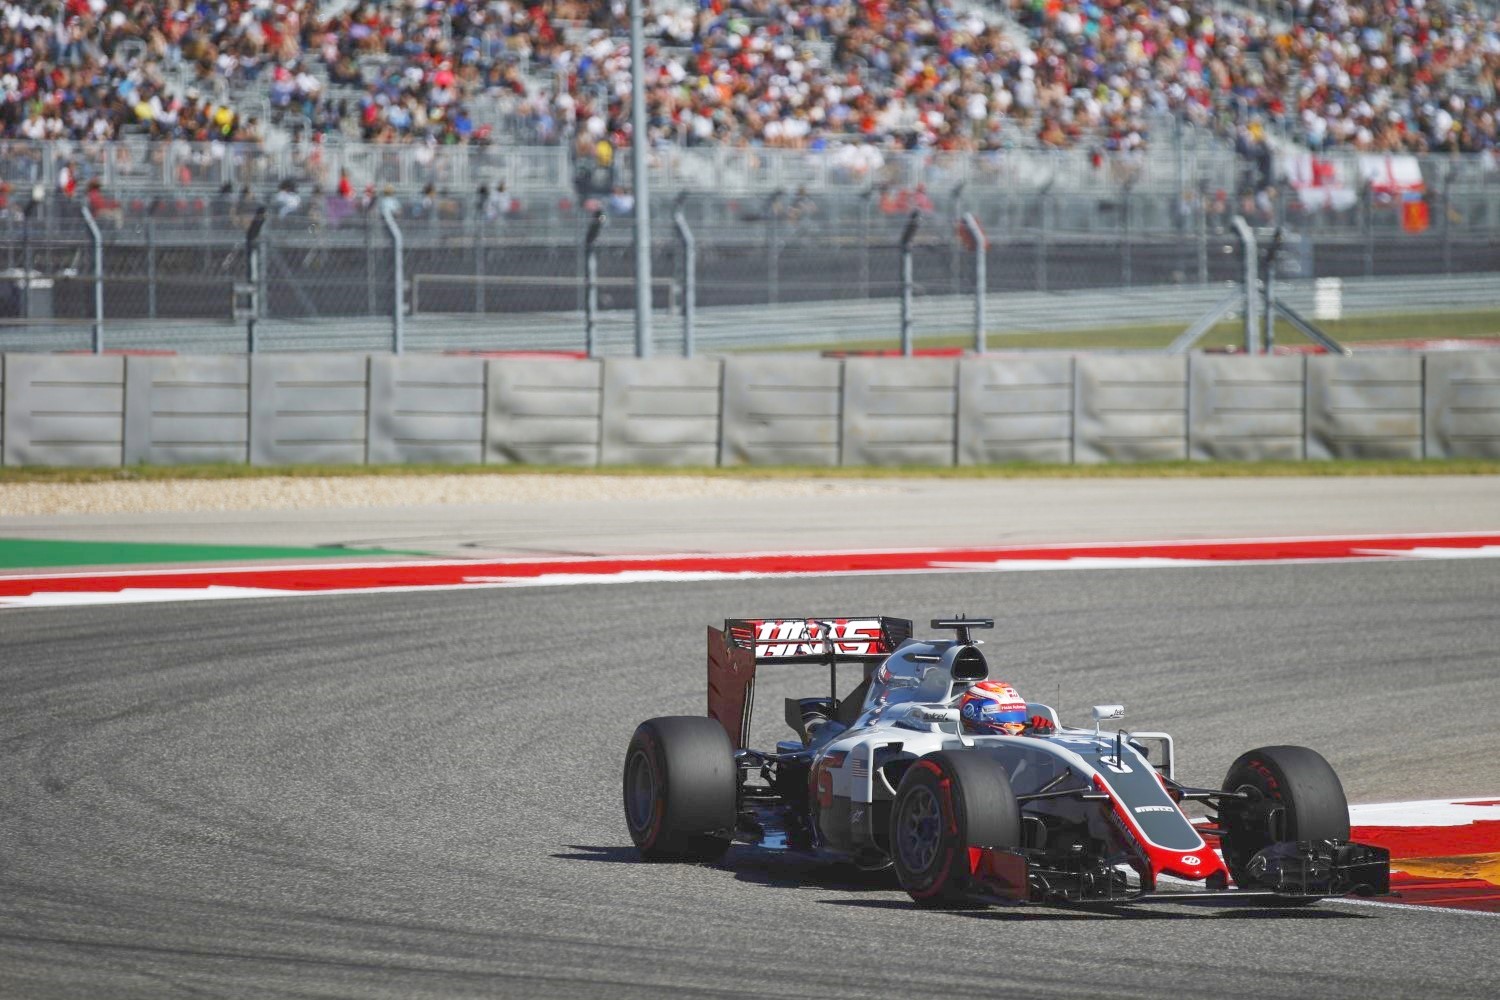 Romain Grosjean in the anti-American Haas car